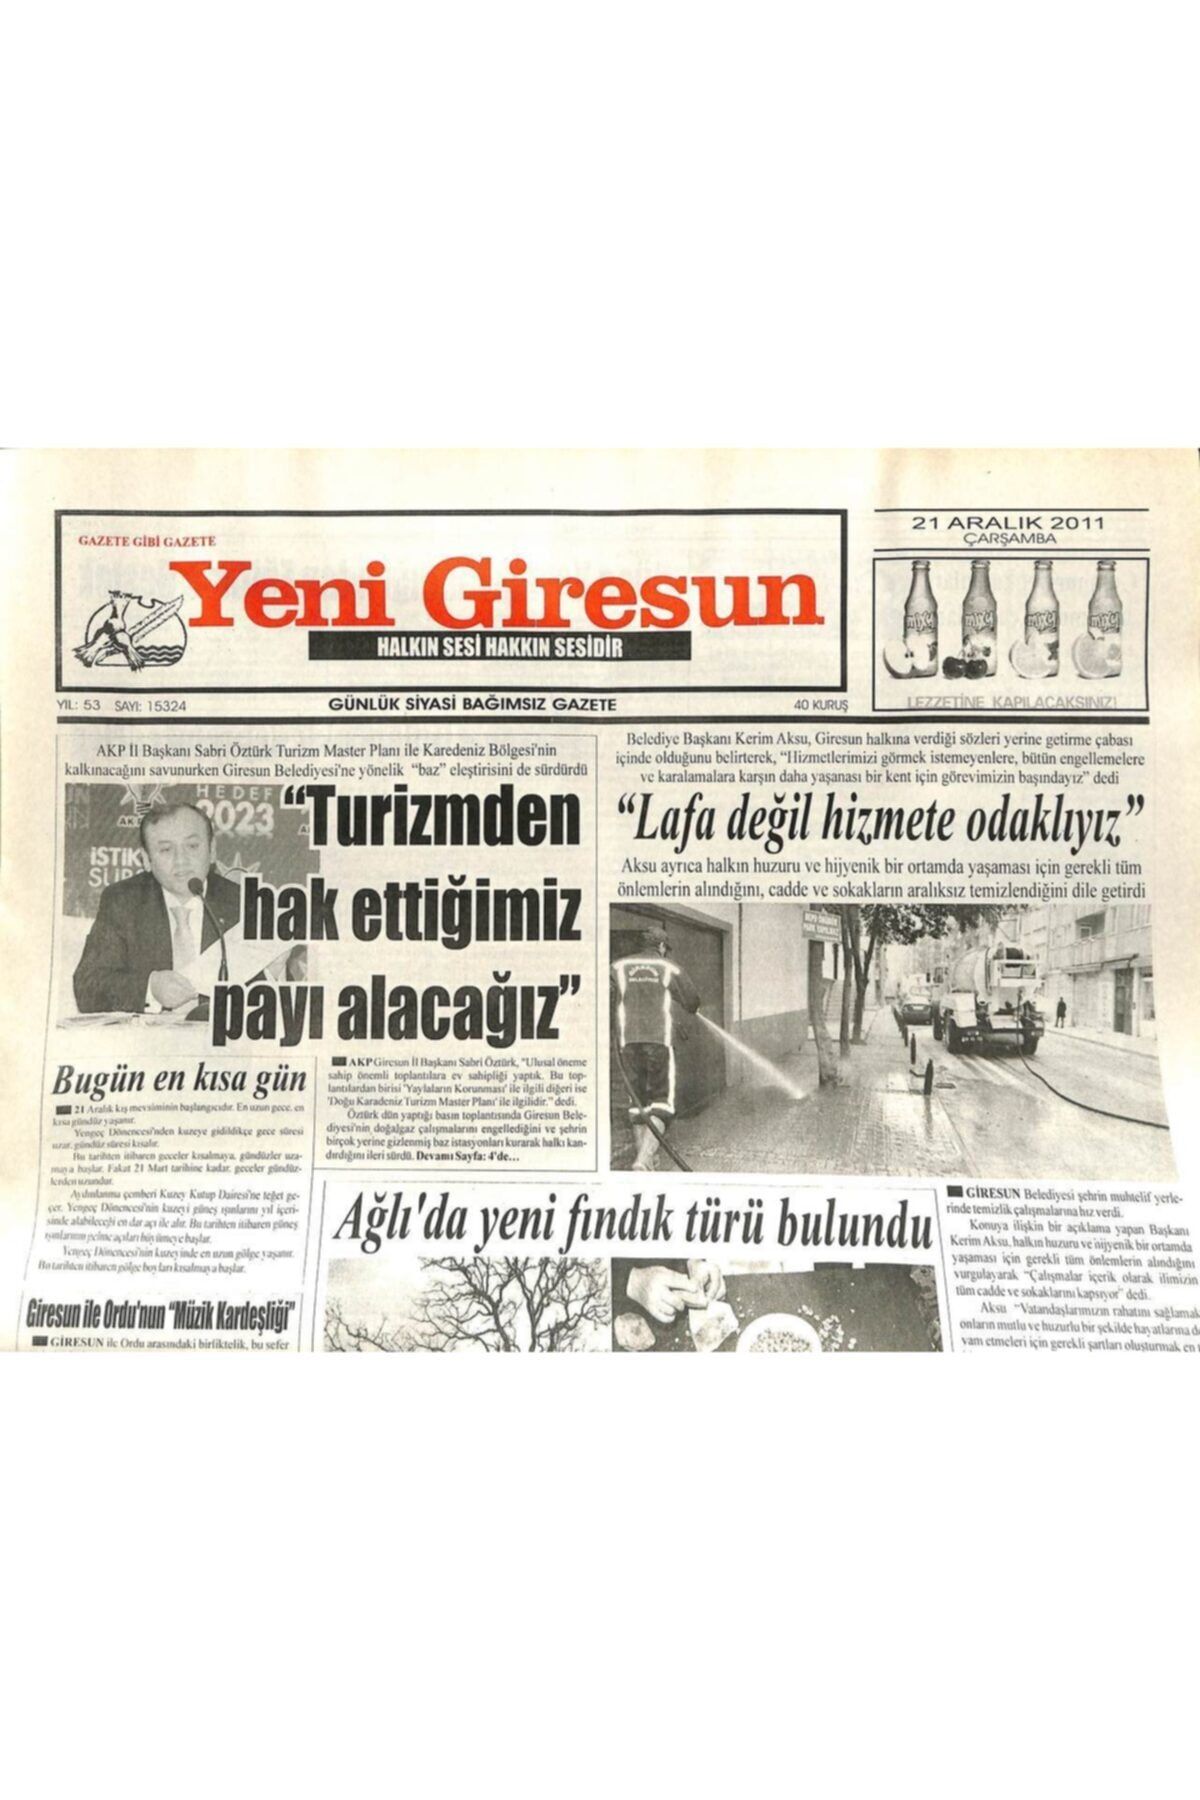 Gökçe Koleksiyon Yeni Giresun Gazetesi 21 Aralık 2011 - Turizmden Hak Ettiğimiz Payı Alacağız Gz108913